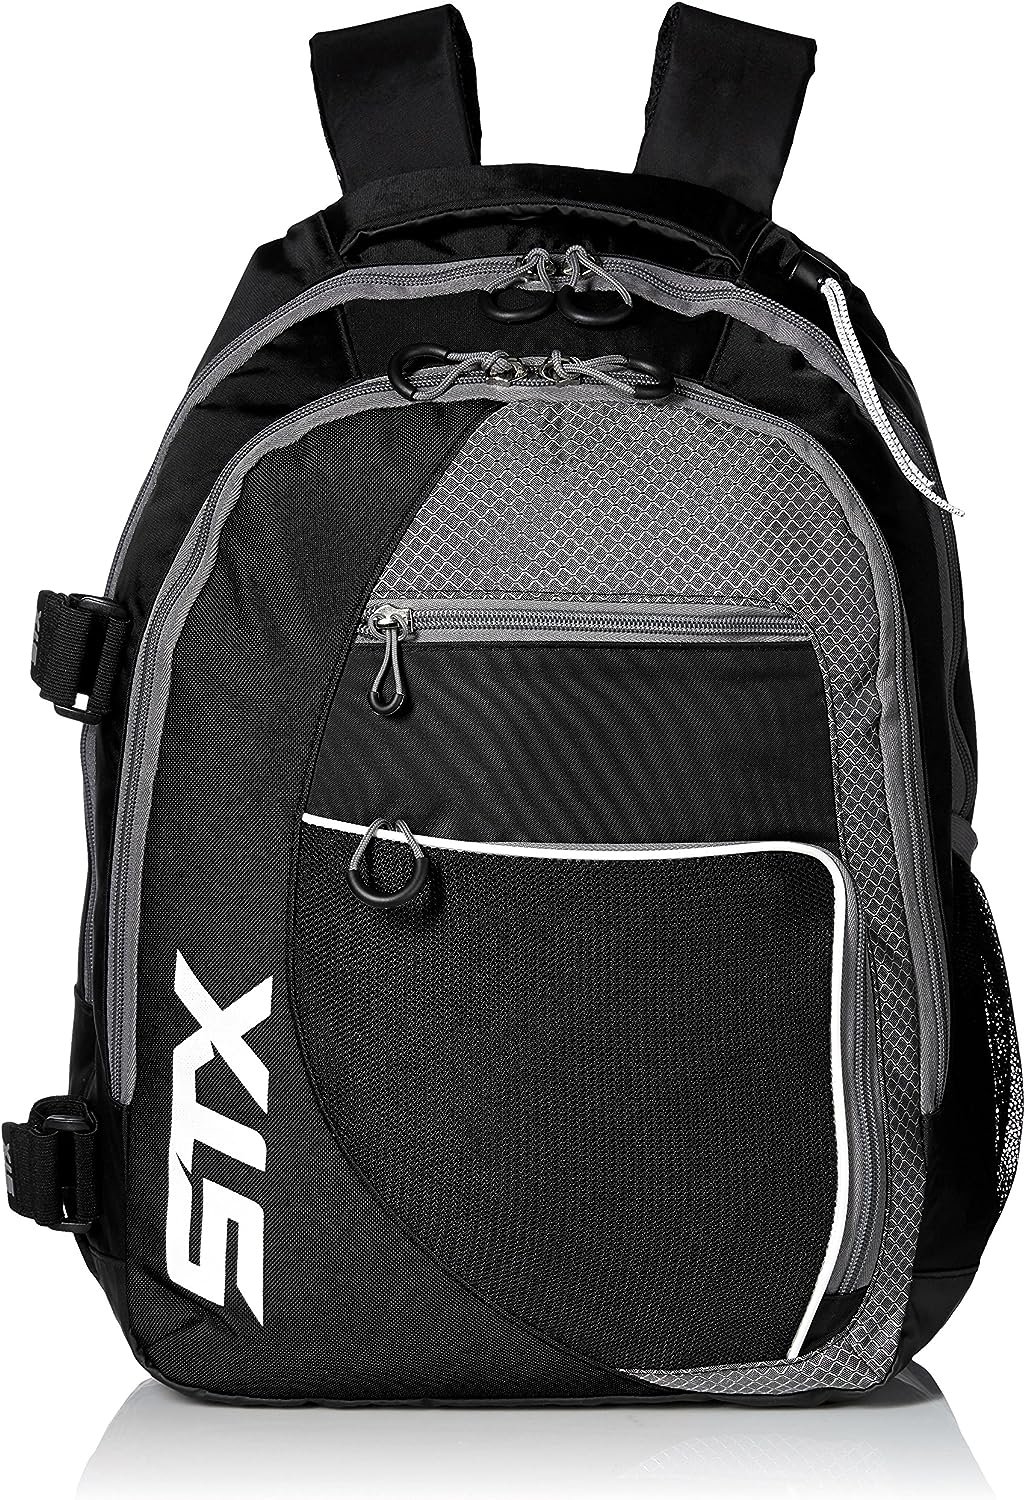 stx lacrosse sidewinder lacrosse backpack